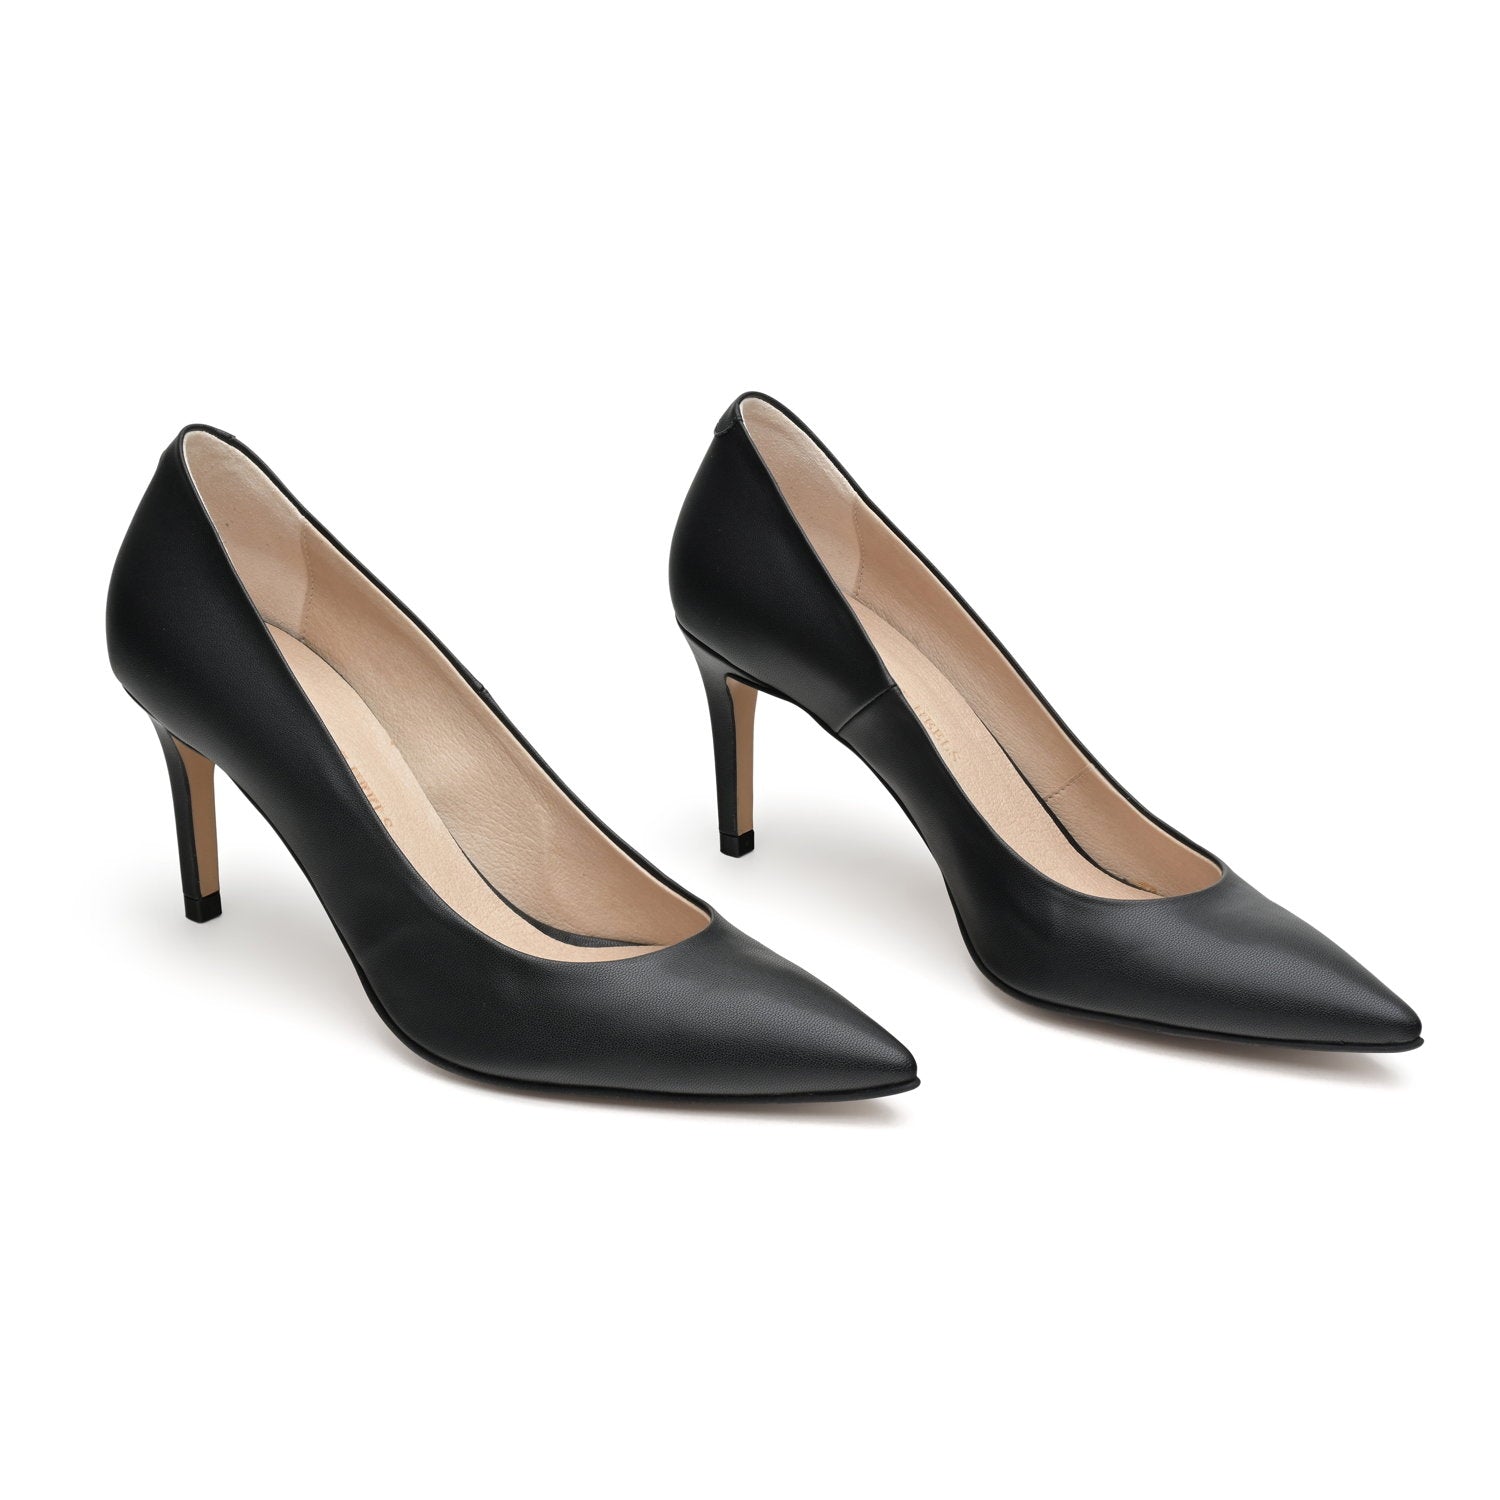 The Black - vegan 70mm heels